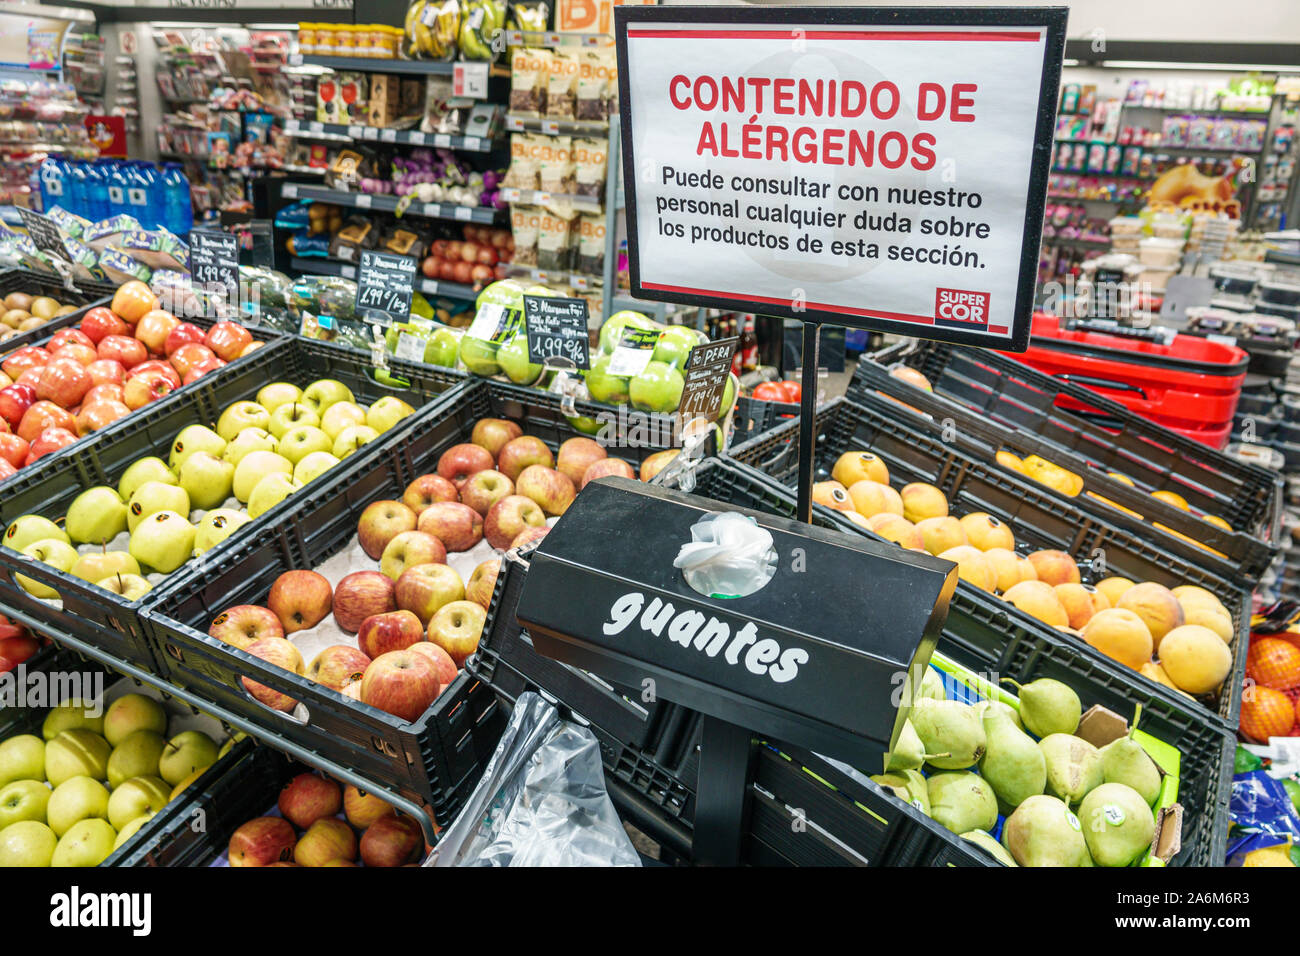 Valencia Spanien, Quatre Carreres, Supercor Expres, Supermarkt, Inneneinrichtung, Verkauf von Obst, Mülleimer, Äpfel, Birnen, Schild, Allergeninformationen Stockfoto